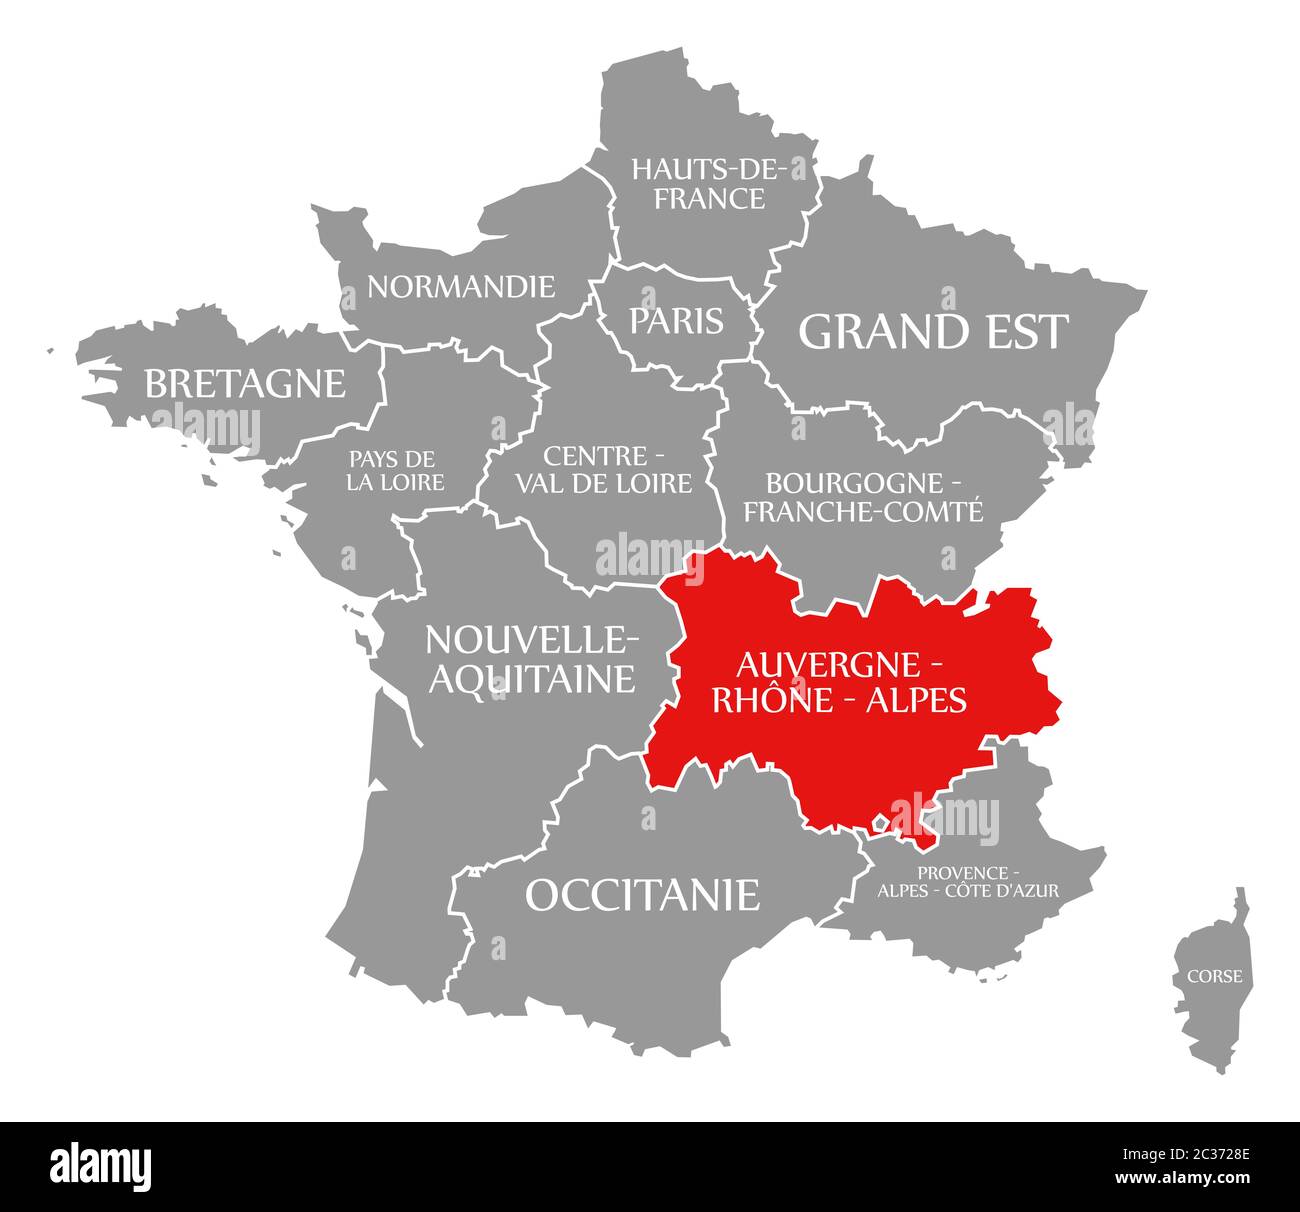 Auvernia - Ródano - Alpes resaltada en rojo en el mapa de Francia Foto de stock